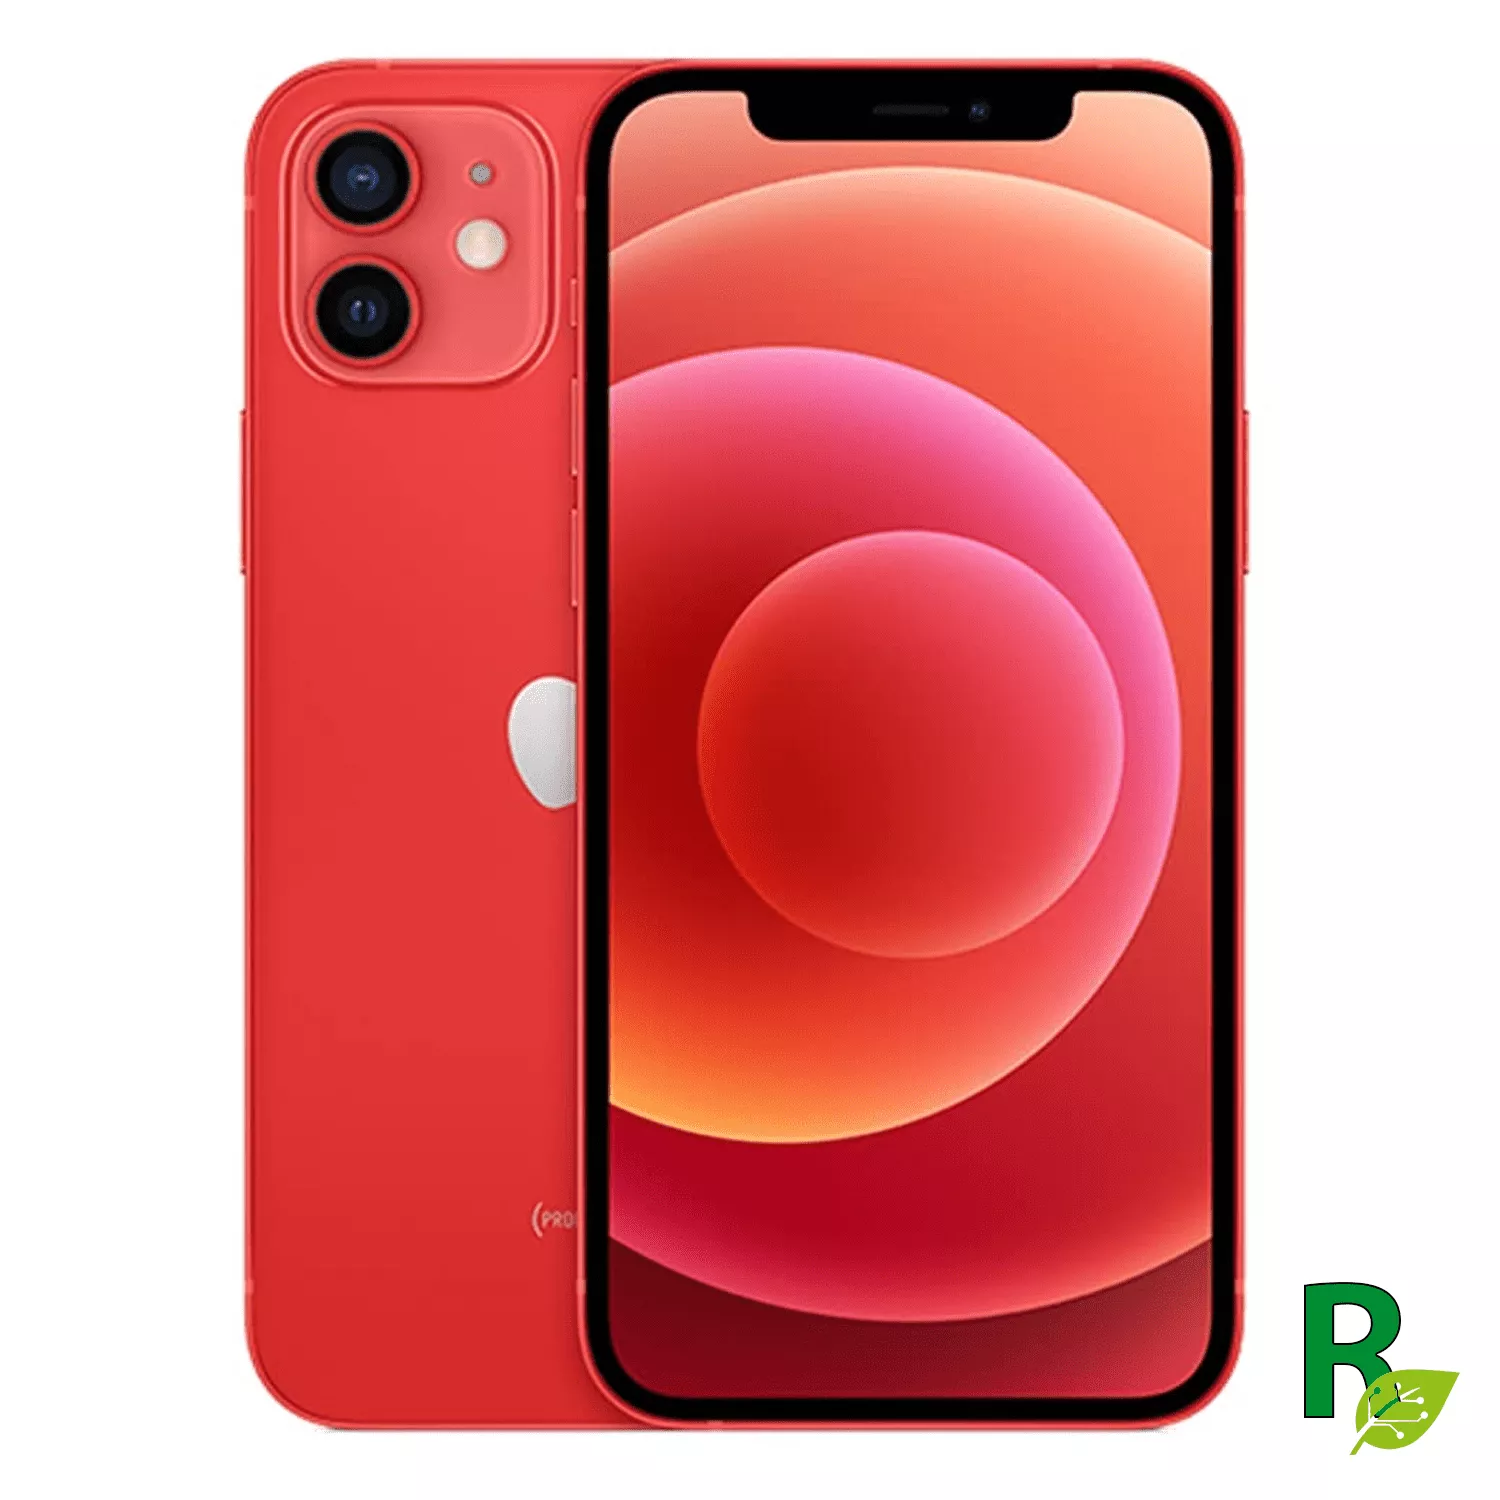 iPhone 12 Mini 64GB - Rojo - 12MINIRED64A - Cat. A 12M64IPH5-Reacondicionado